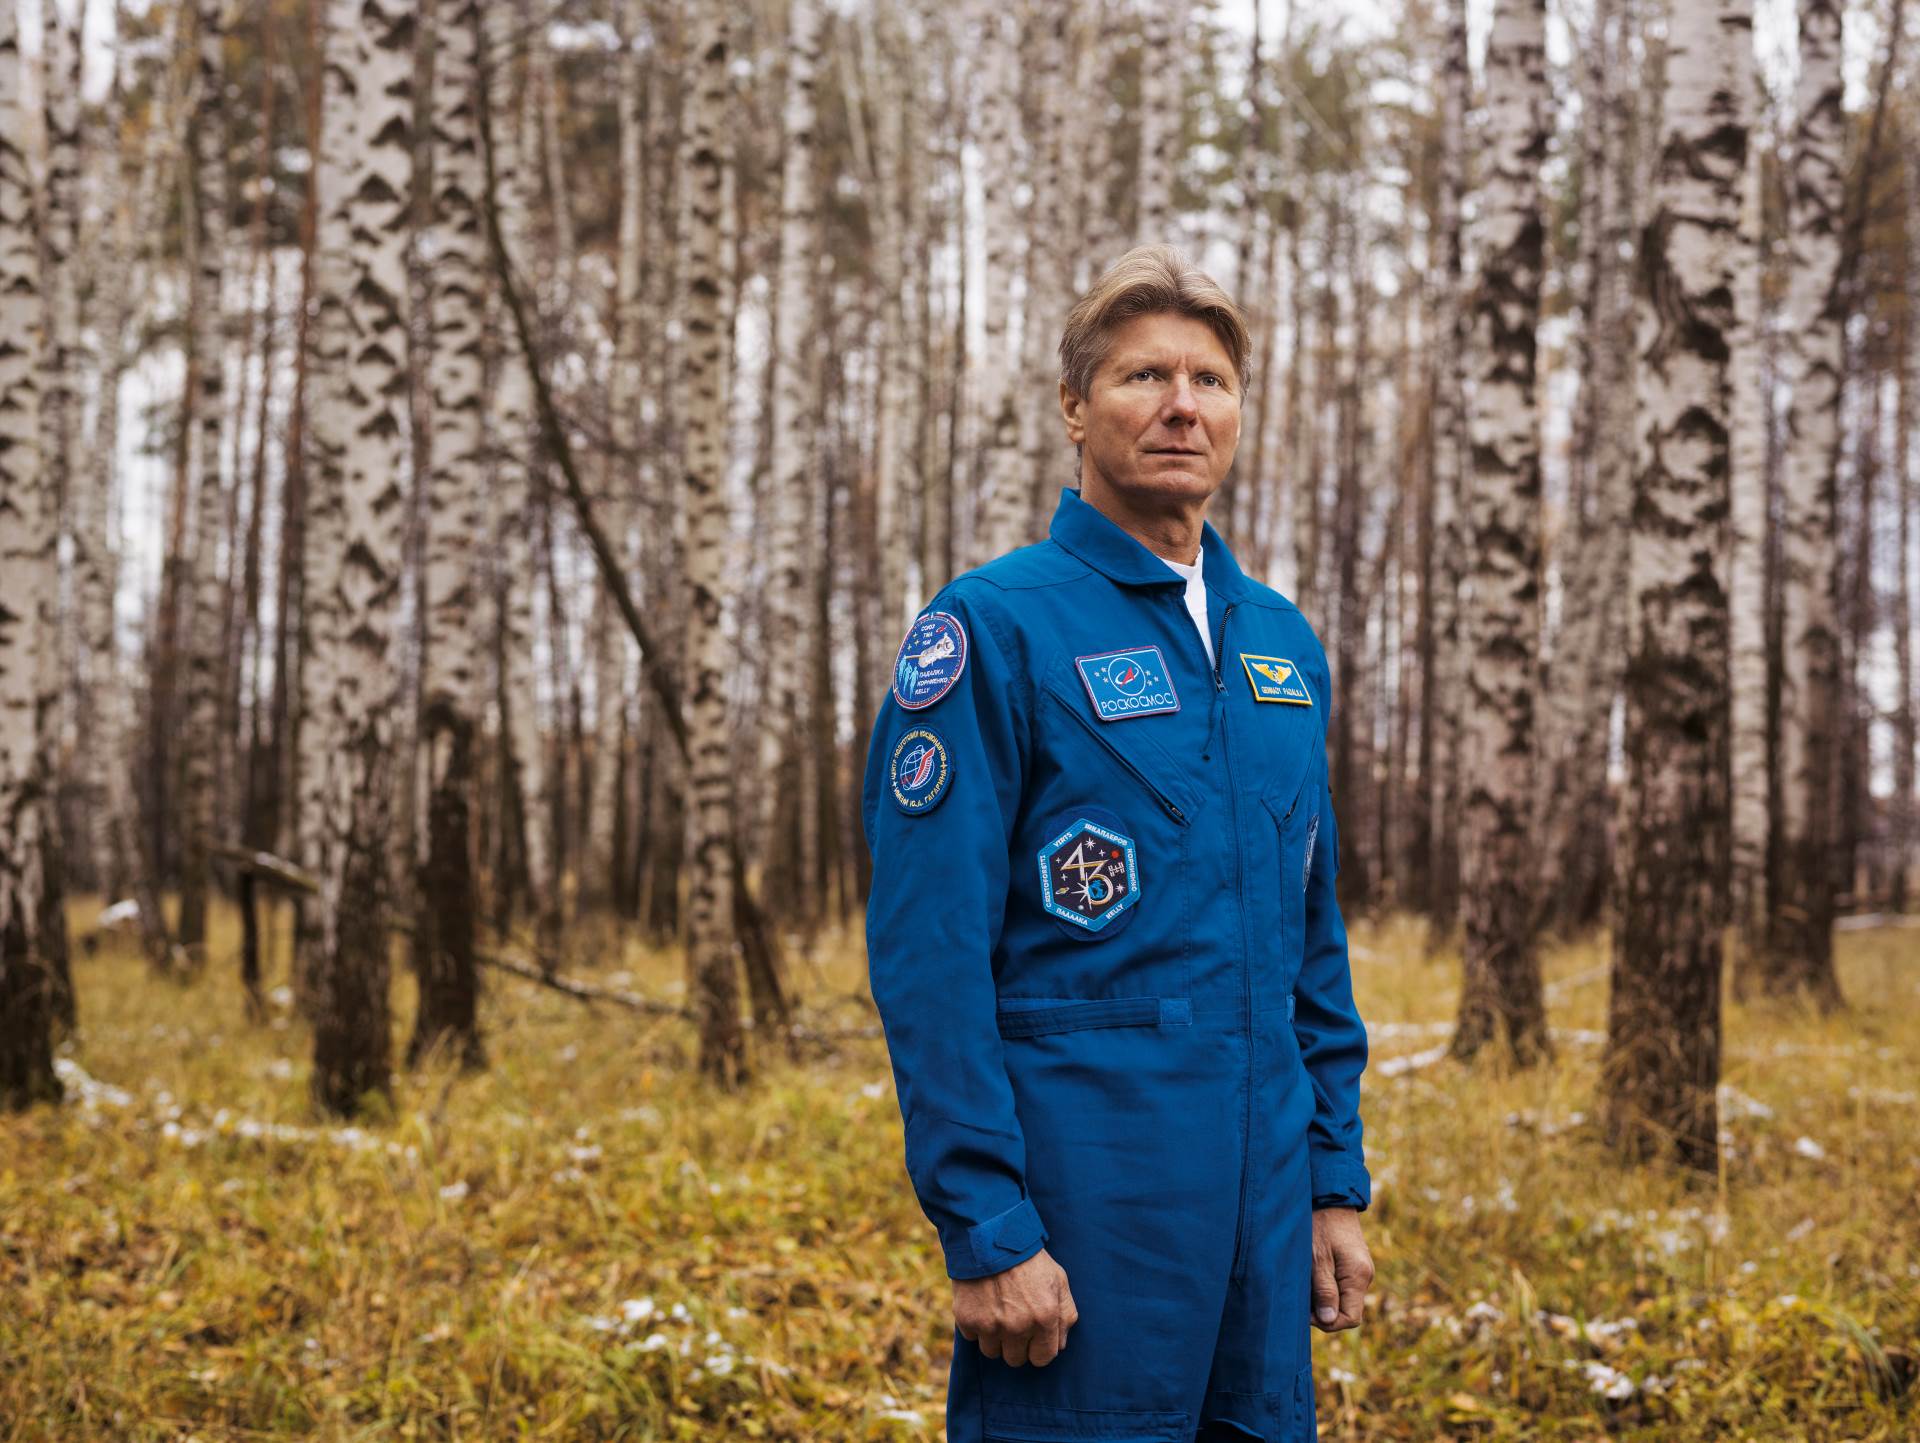 Kako astronauti vide Zemlju? Saznajte u novom broju National Geographica Hrvatska!